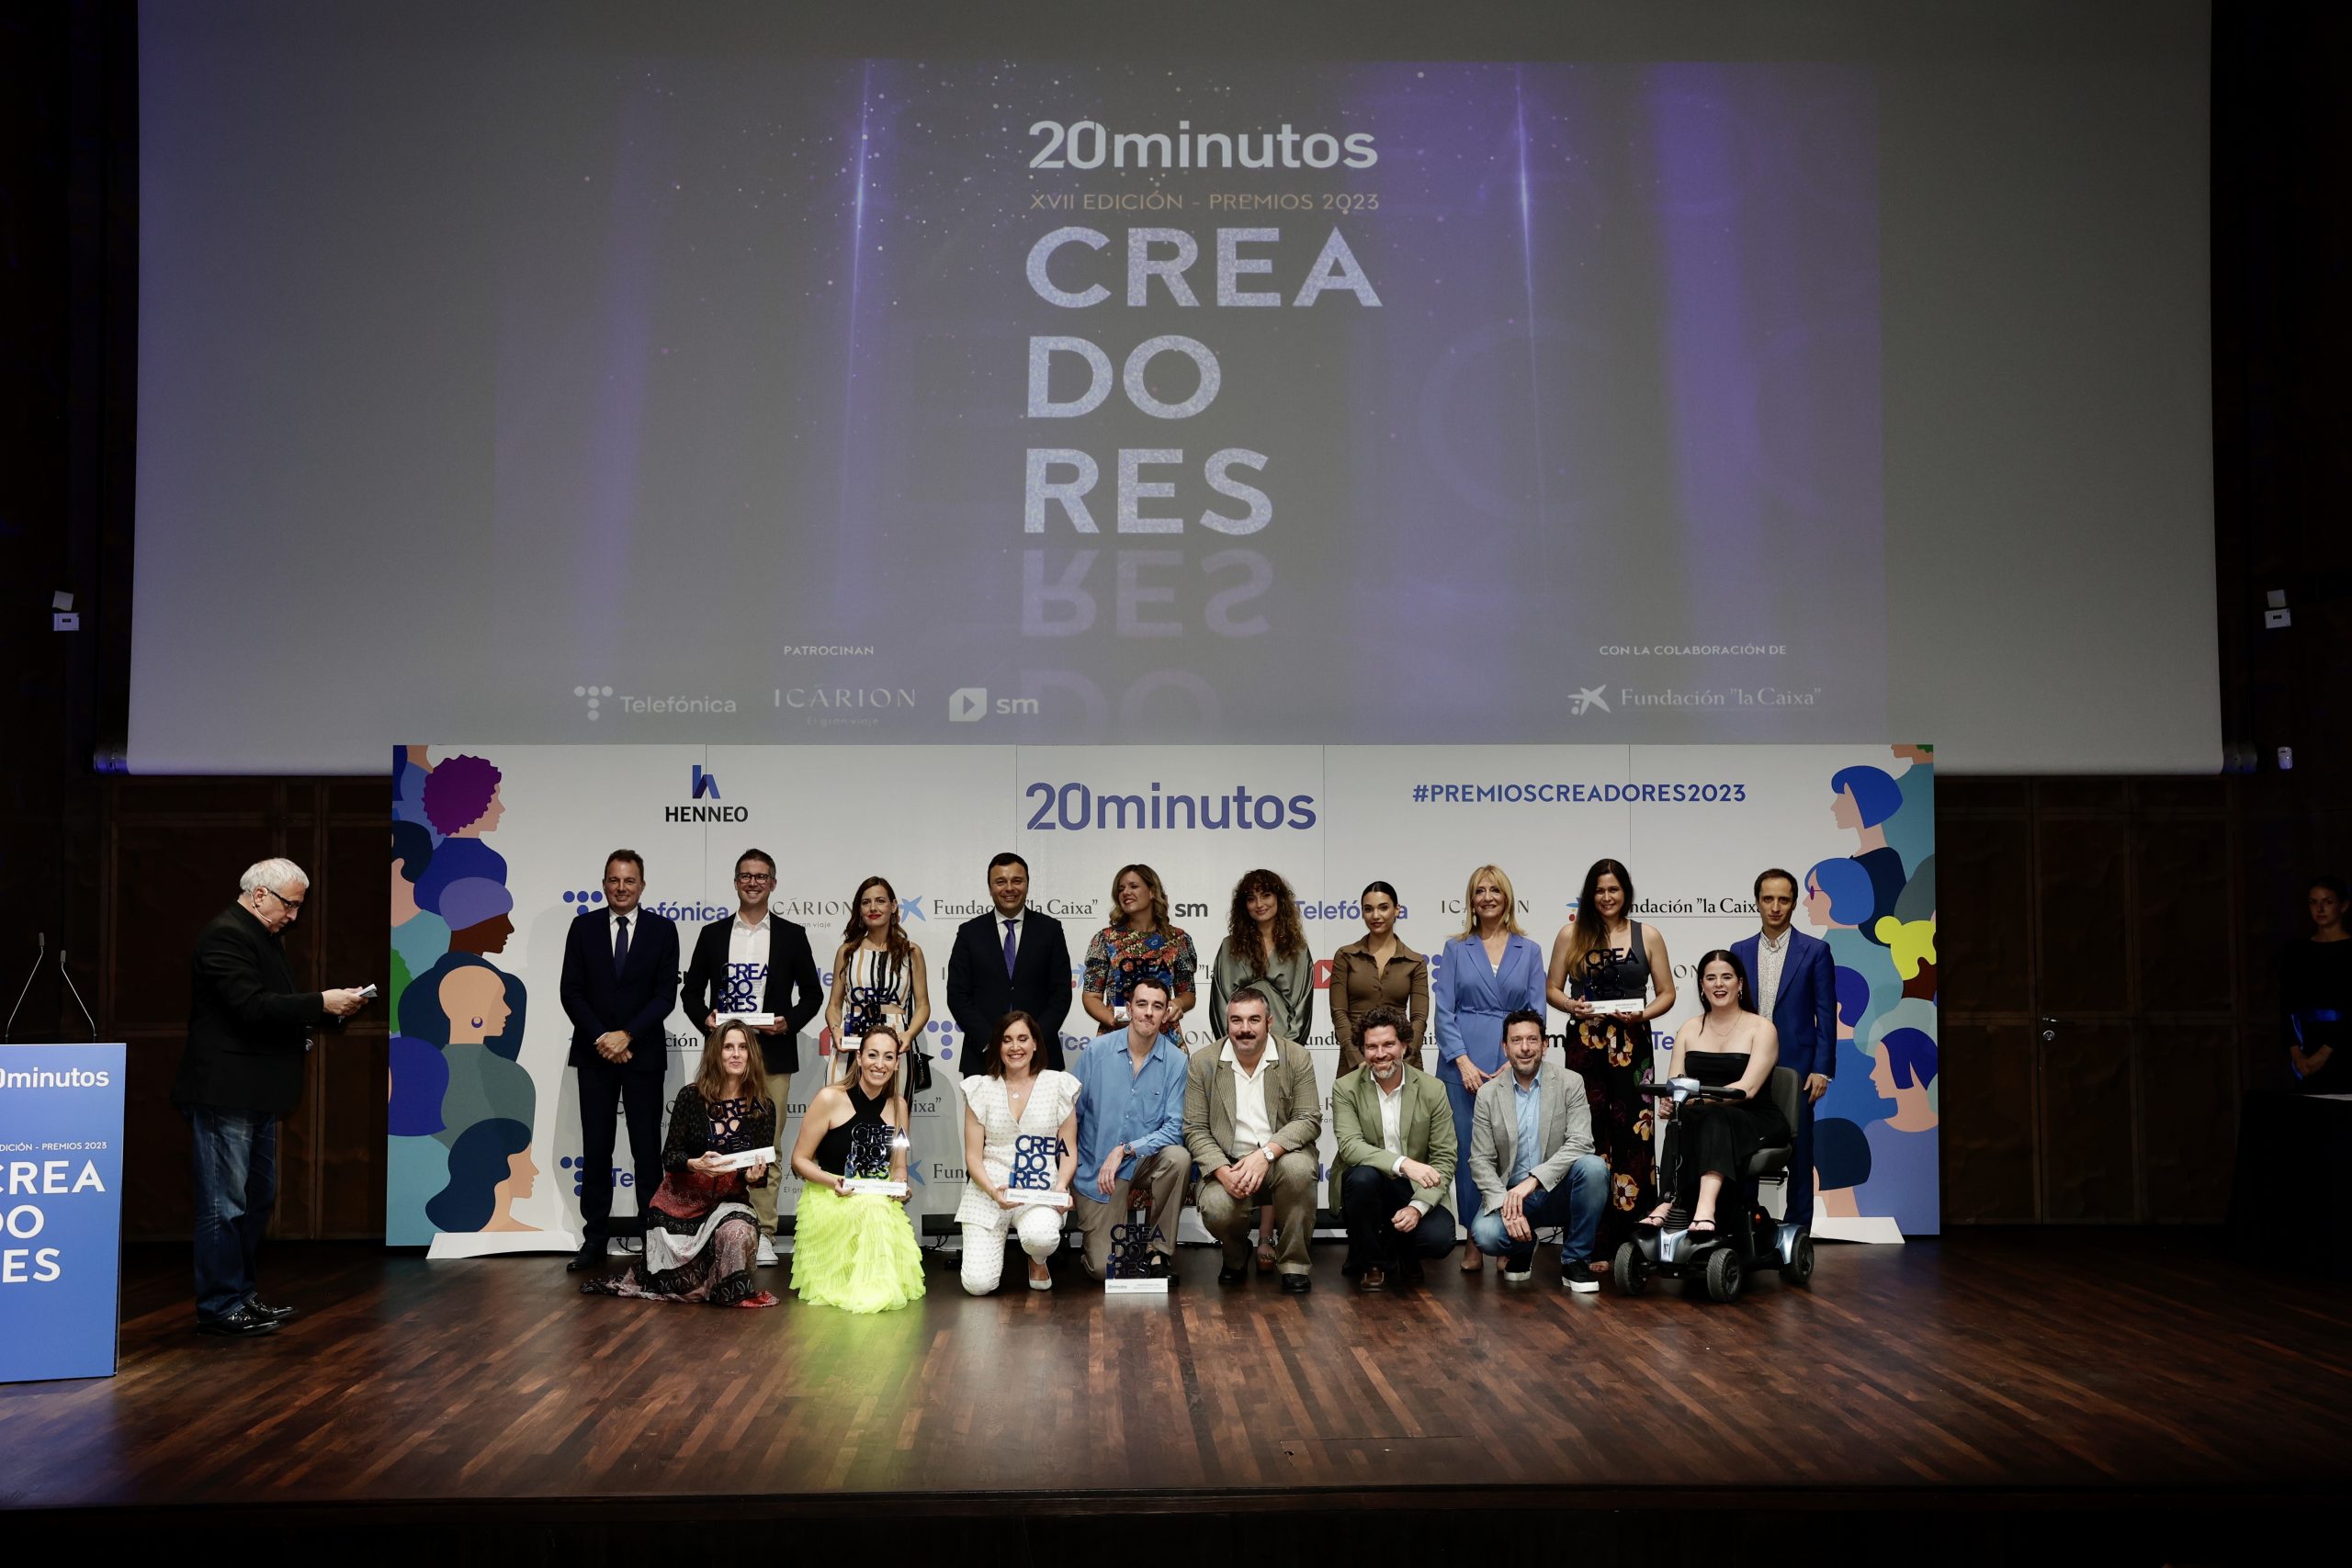 Premios Creadores 2023: Una noche inolvidable para aunar la creación y la información